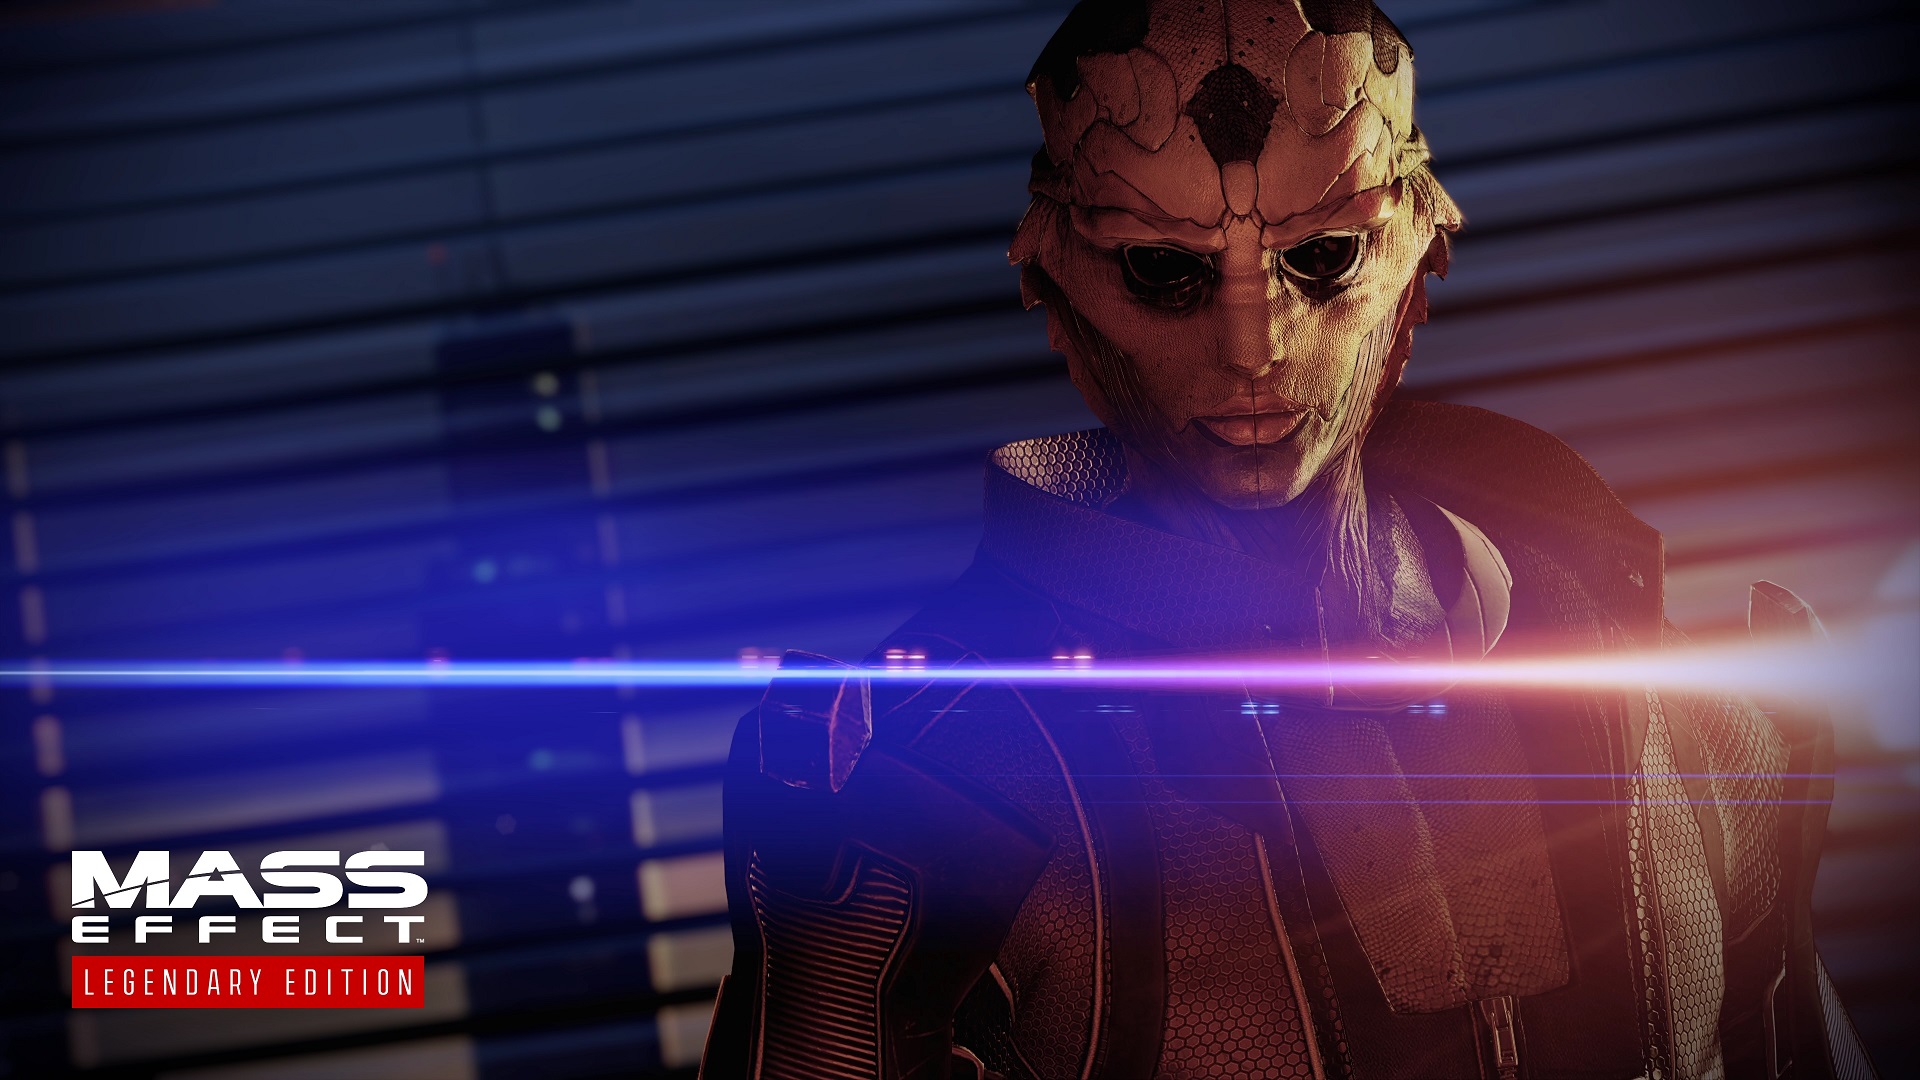 Imagem da edição lendária do Mass Effect